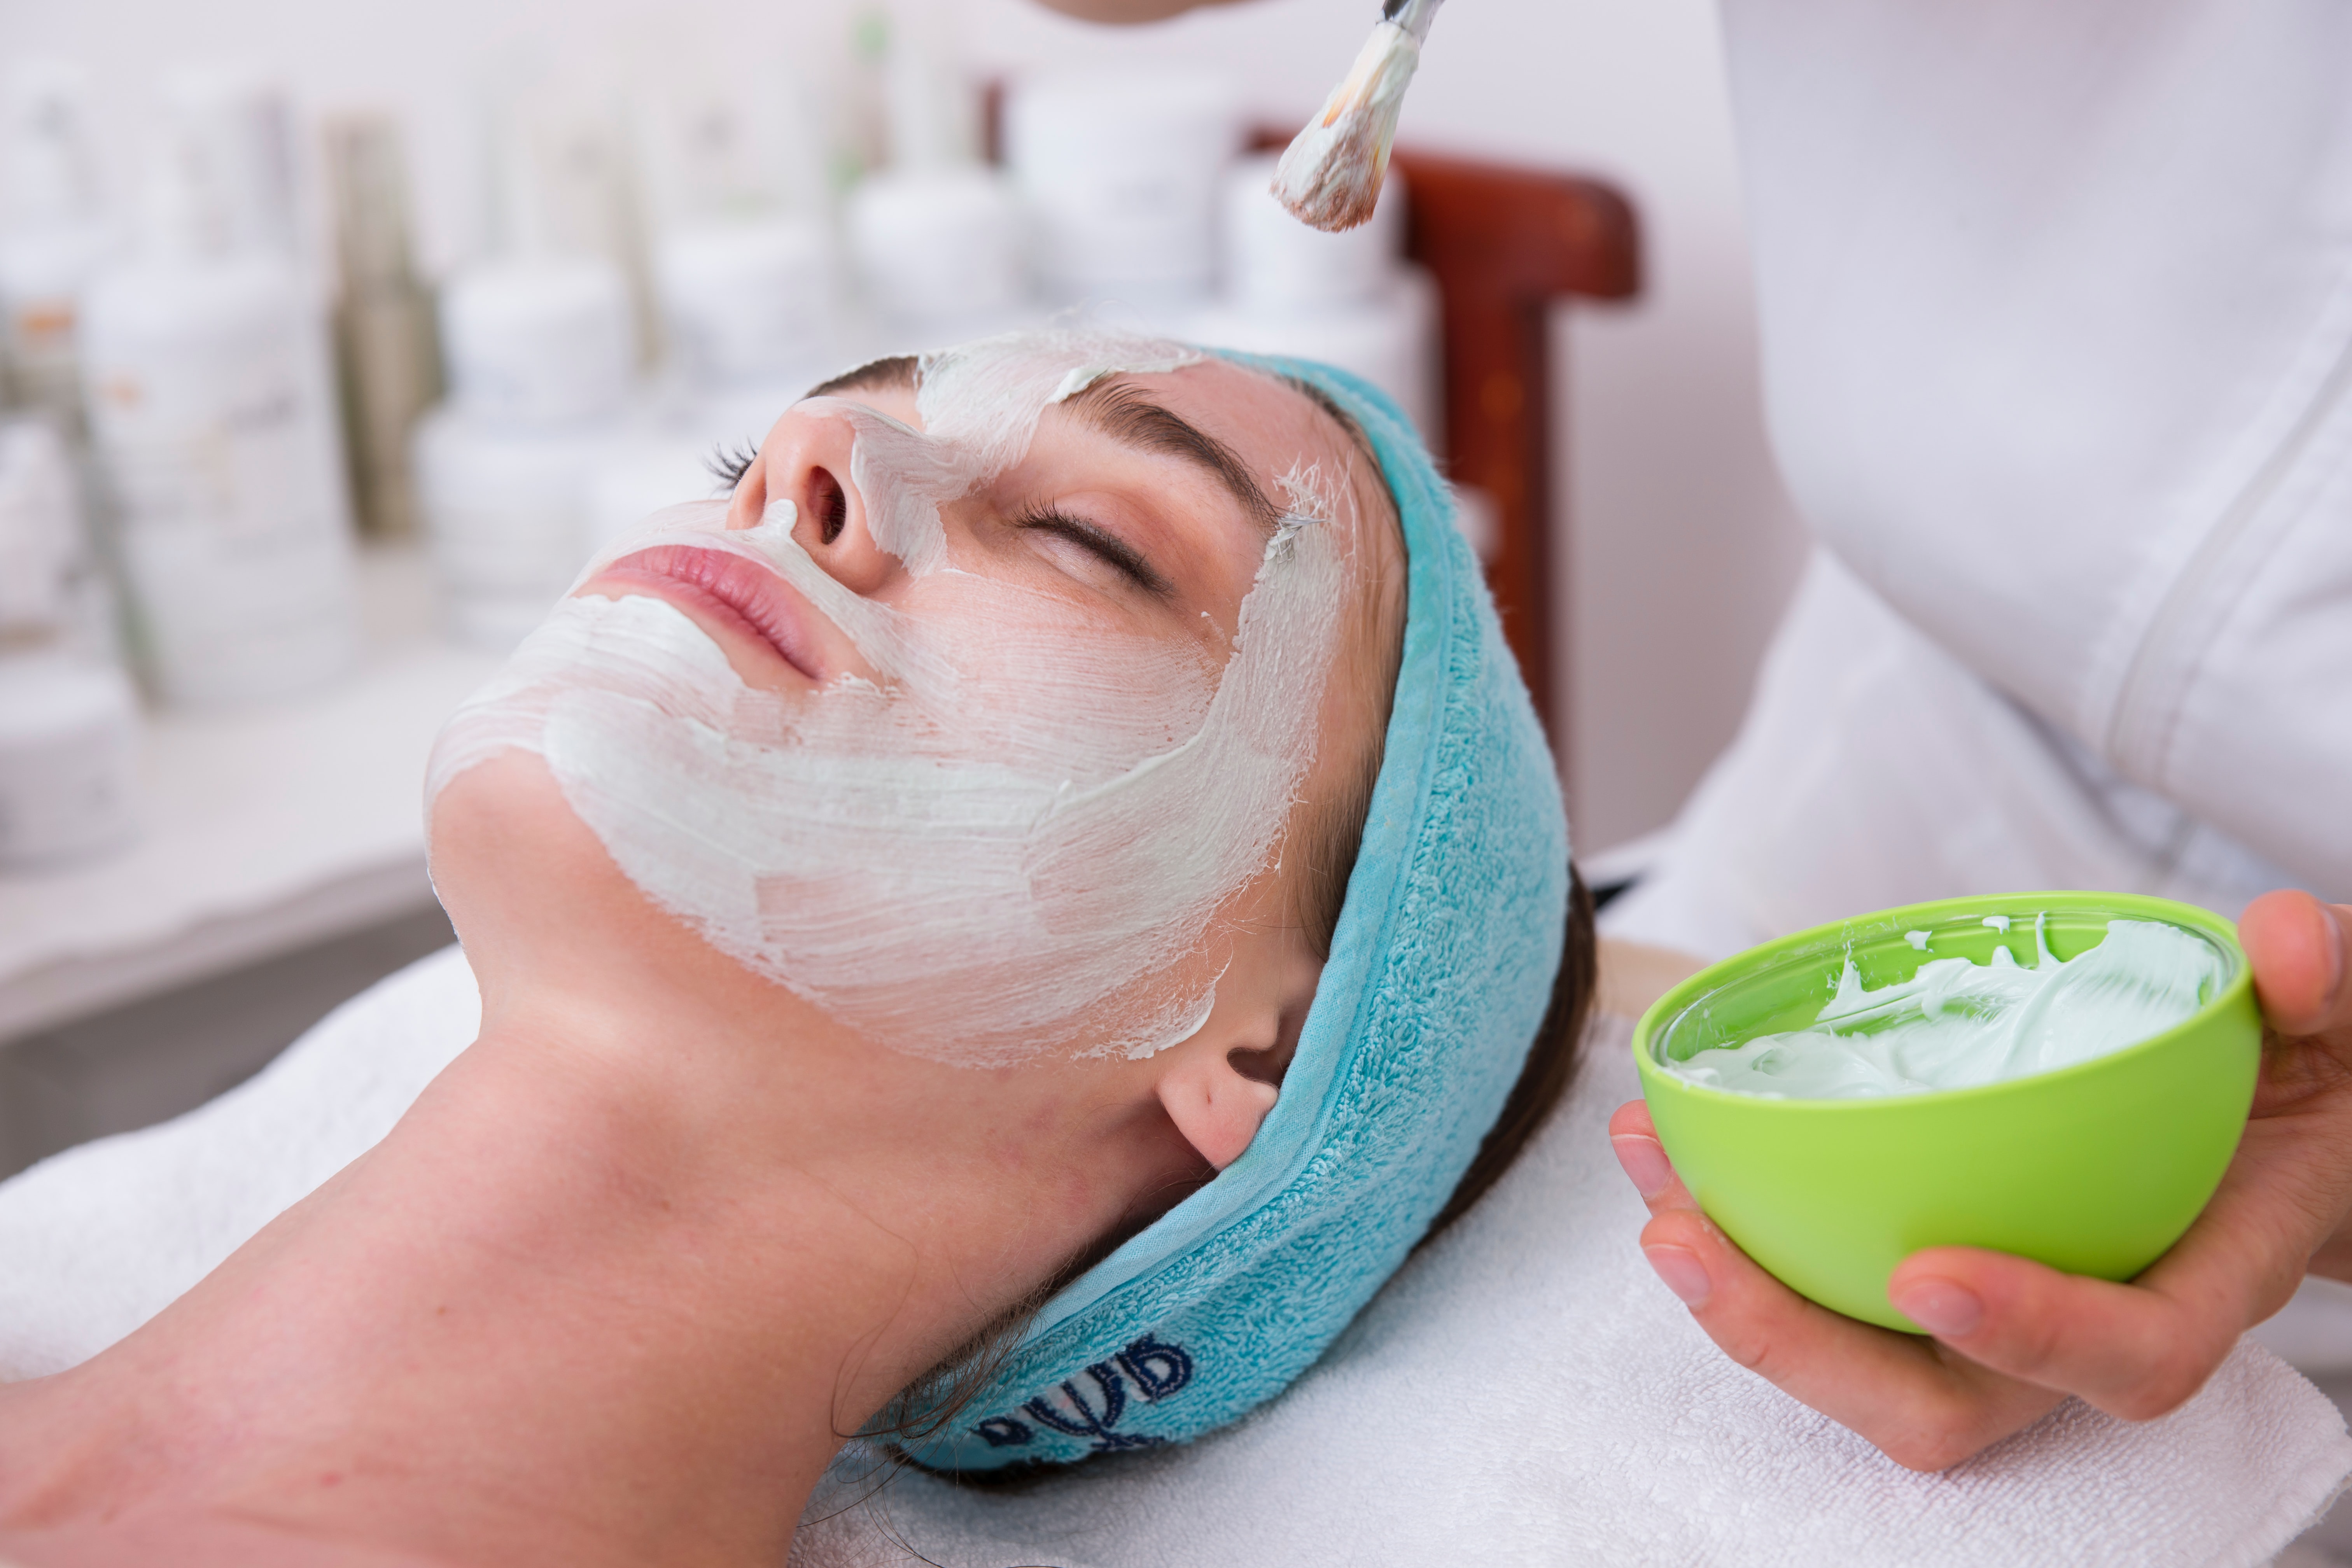 Femeie la salonul de cosmetica in timp ce i se aplica o masca faciala